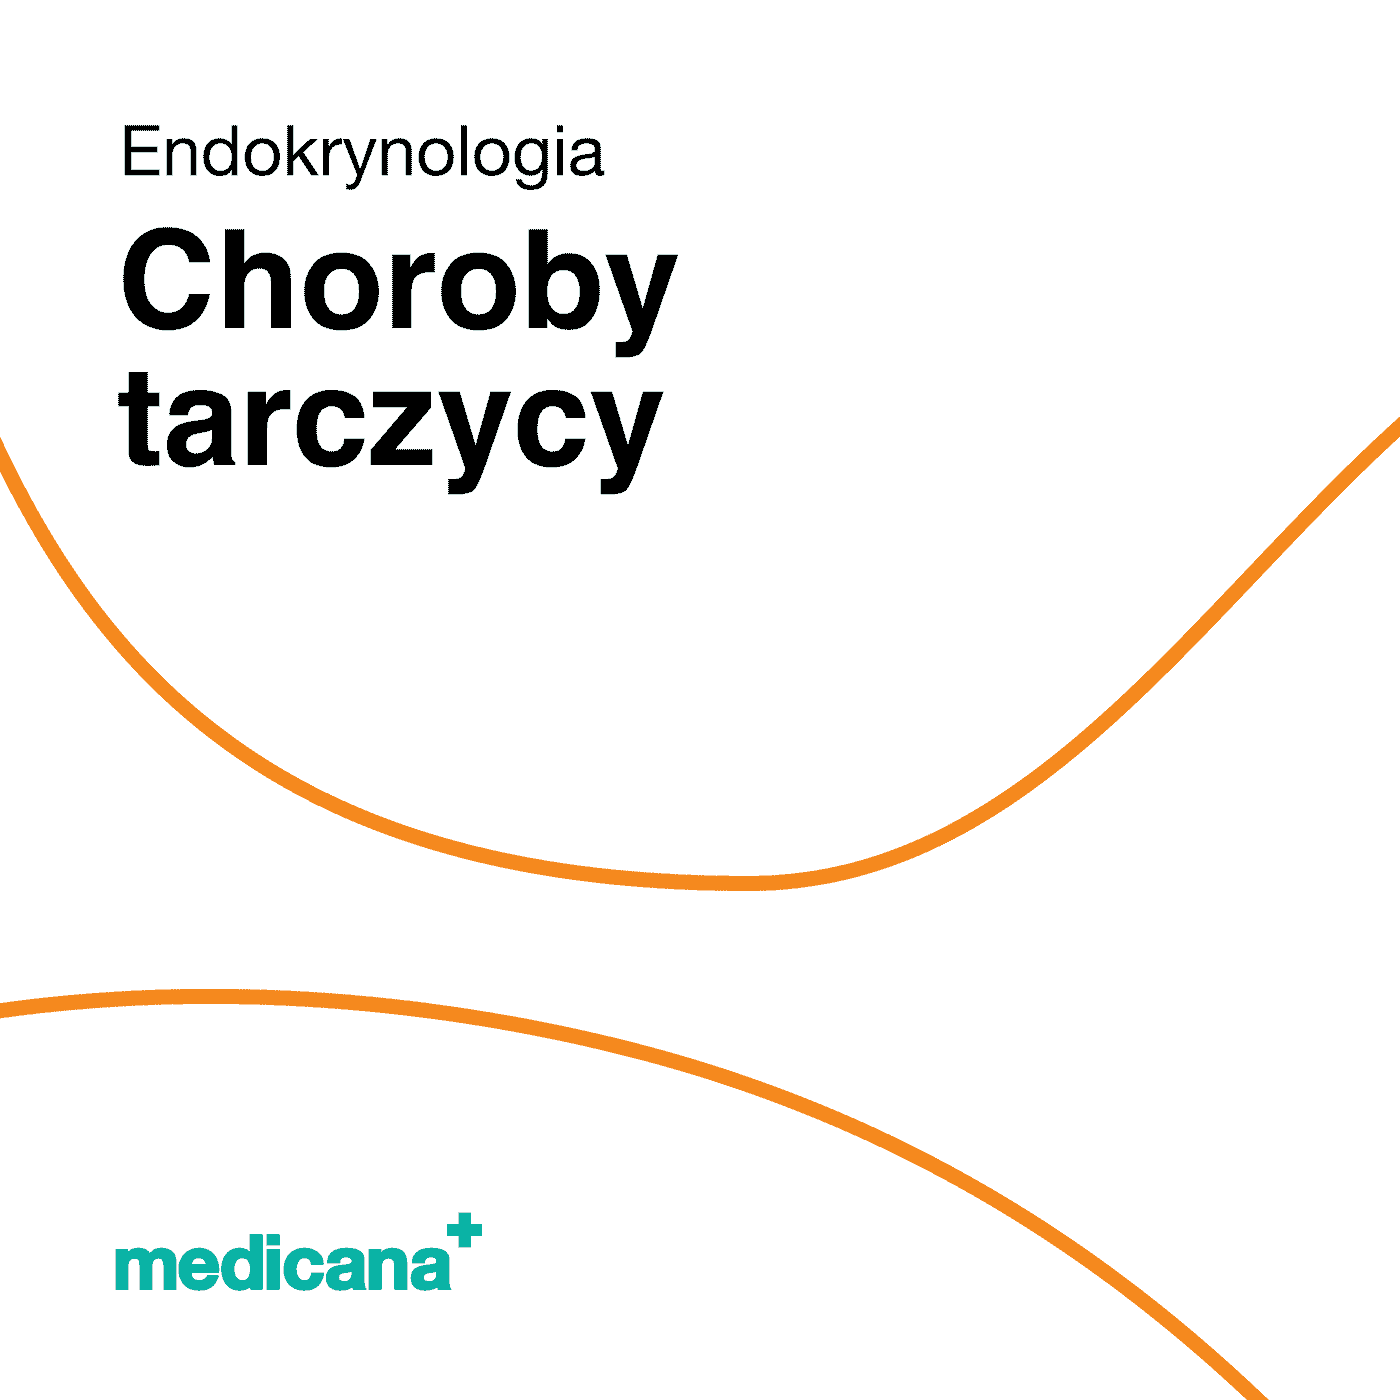 Grafika, białe tło z pomarańczową kreską, czarnym napisem Endokrynologia - Choroby tarczycy i logo Medicana Centrum Terapii Medyczna Marihuana w lewym dolnym rogu.